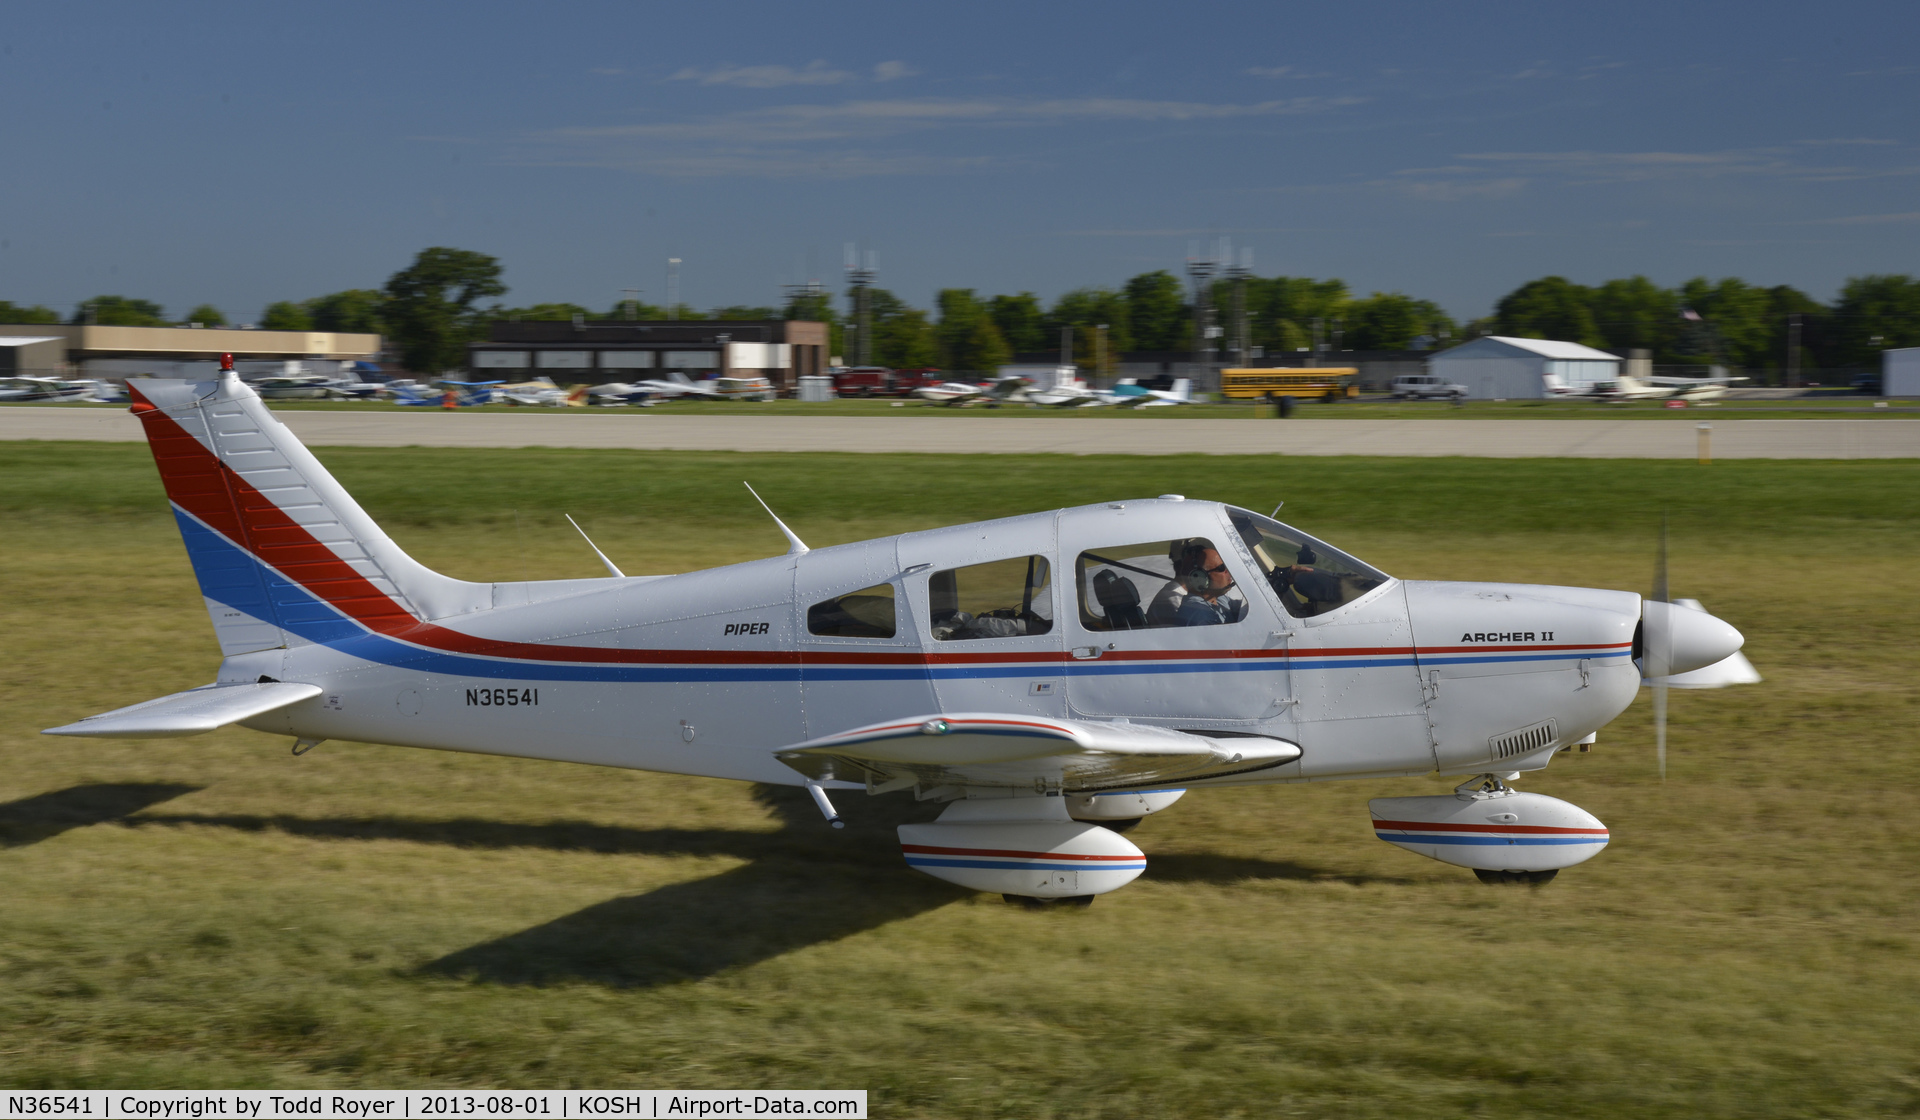 N36541, 1978 Piper PA-28-181 Archer C/N 28-7890521, Airventure 2013